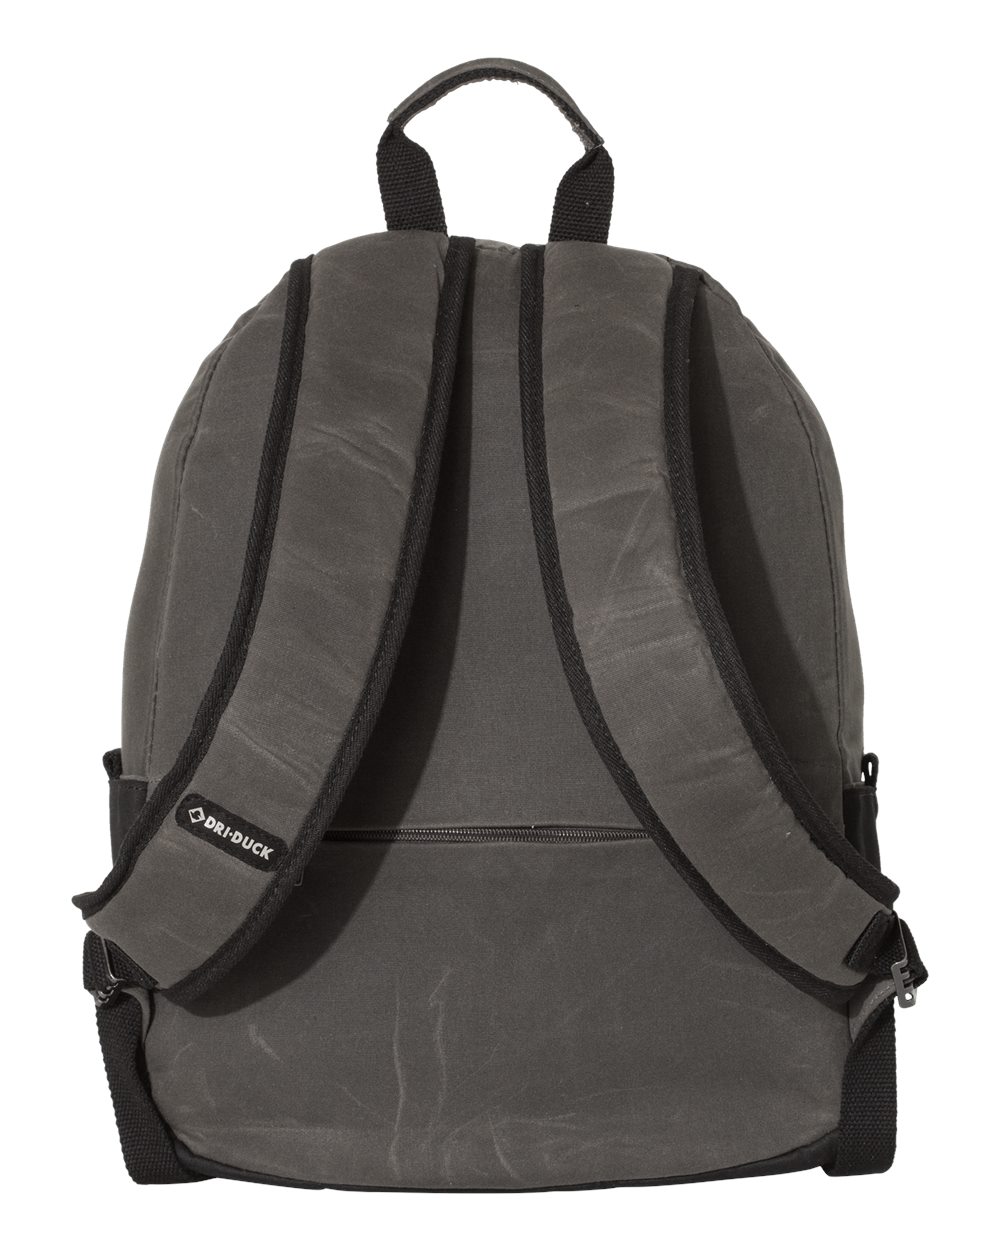 20L Essential Backpack - 1401-DRI DUCK